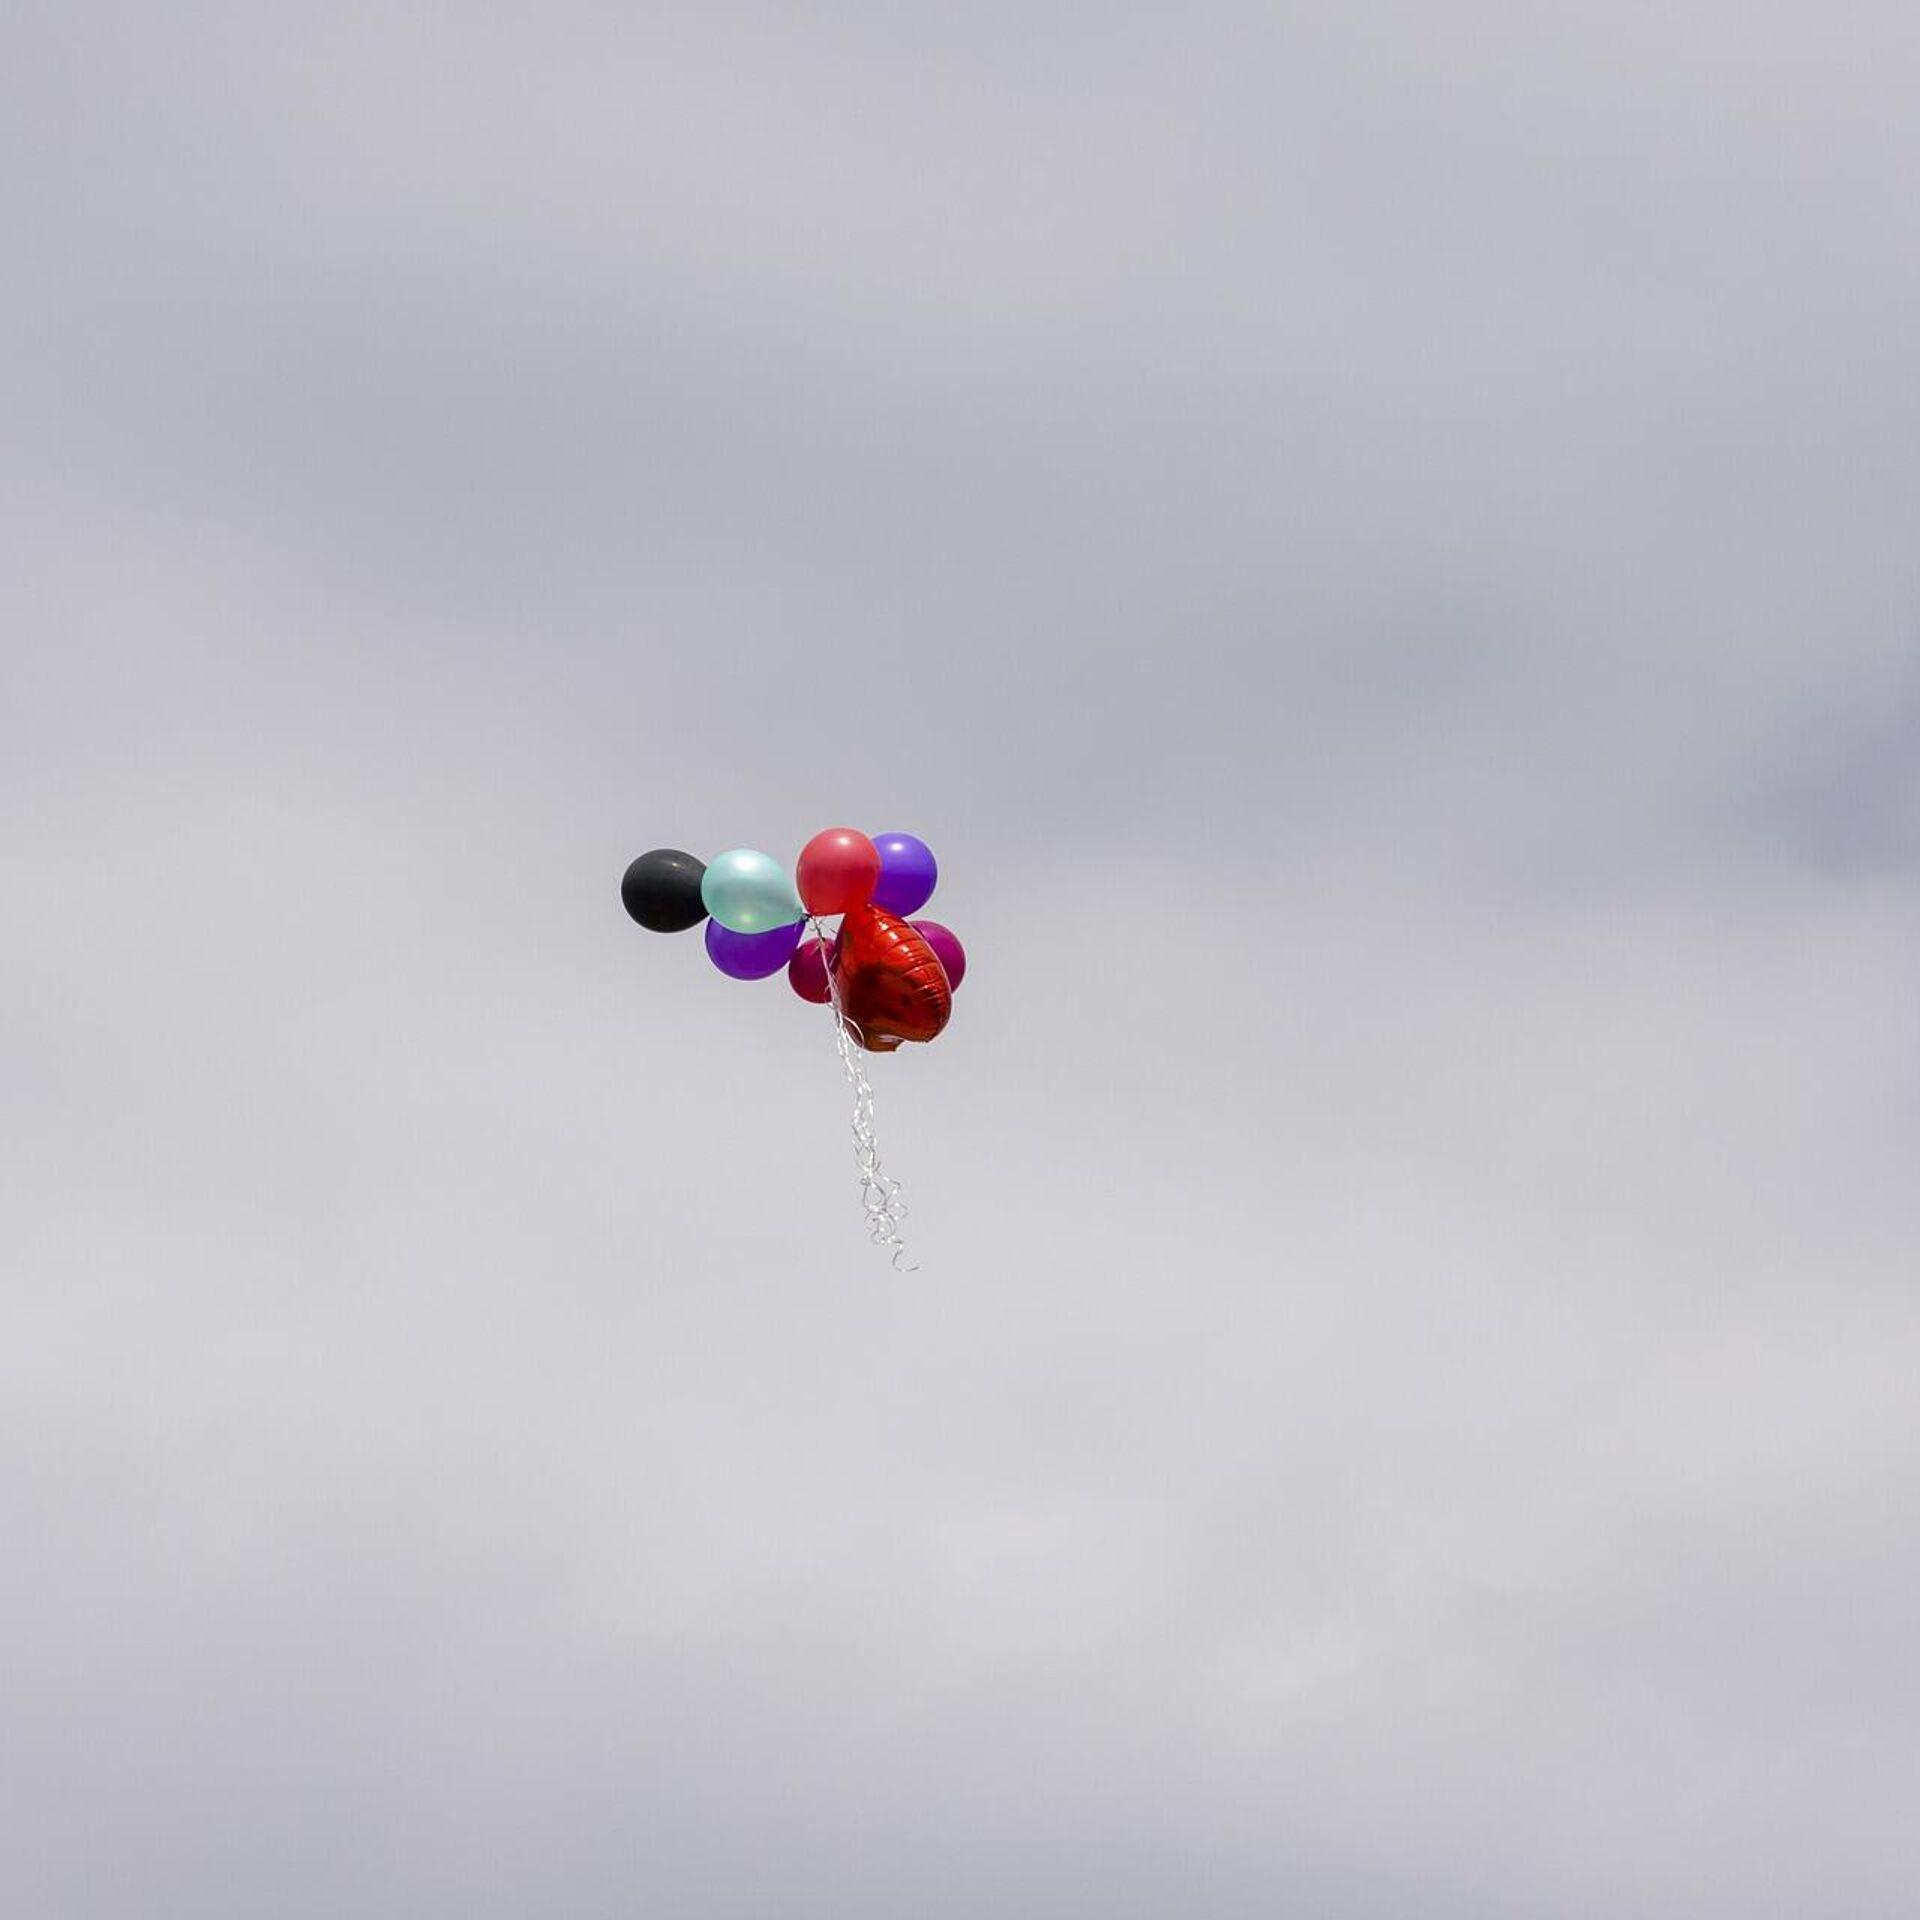 Обои на рабочий стол Воздушные шарики в небе с облаками, фотограф Thomas  Peham, обои для рабочего стола, скачать обои, обои бесплатно